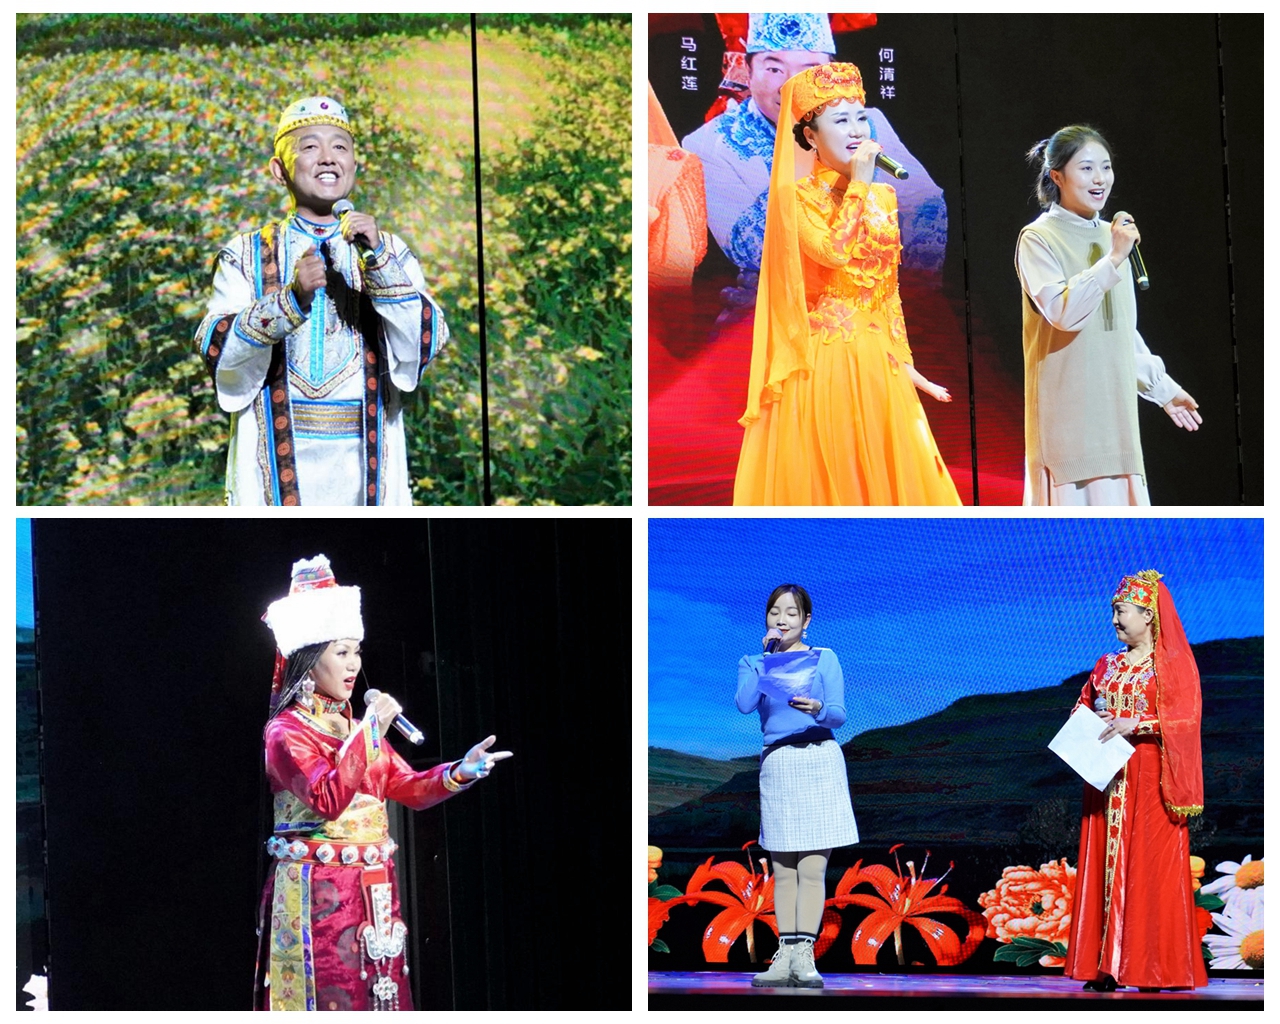 藏族花儿歌手索南孙斌,花儿传承人,歌手妥燕,藏族花儿歌手卓玛,青海